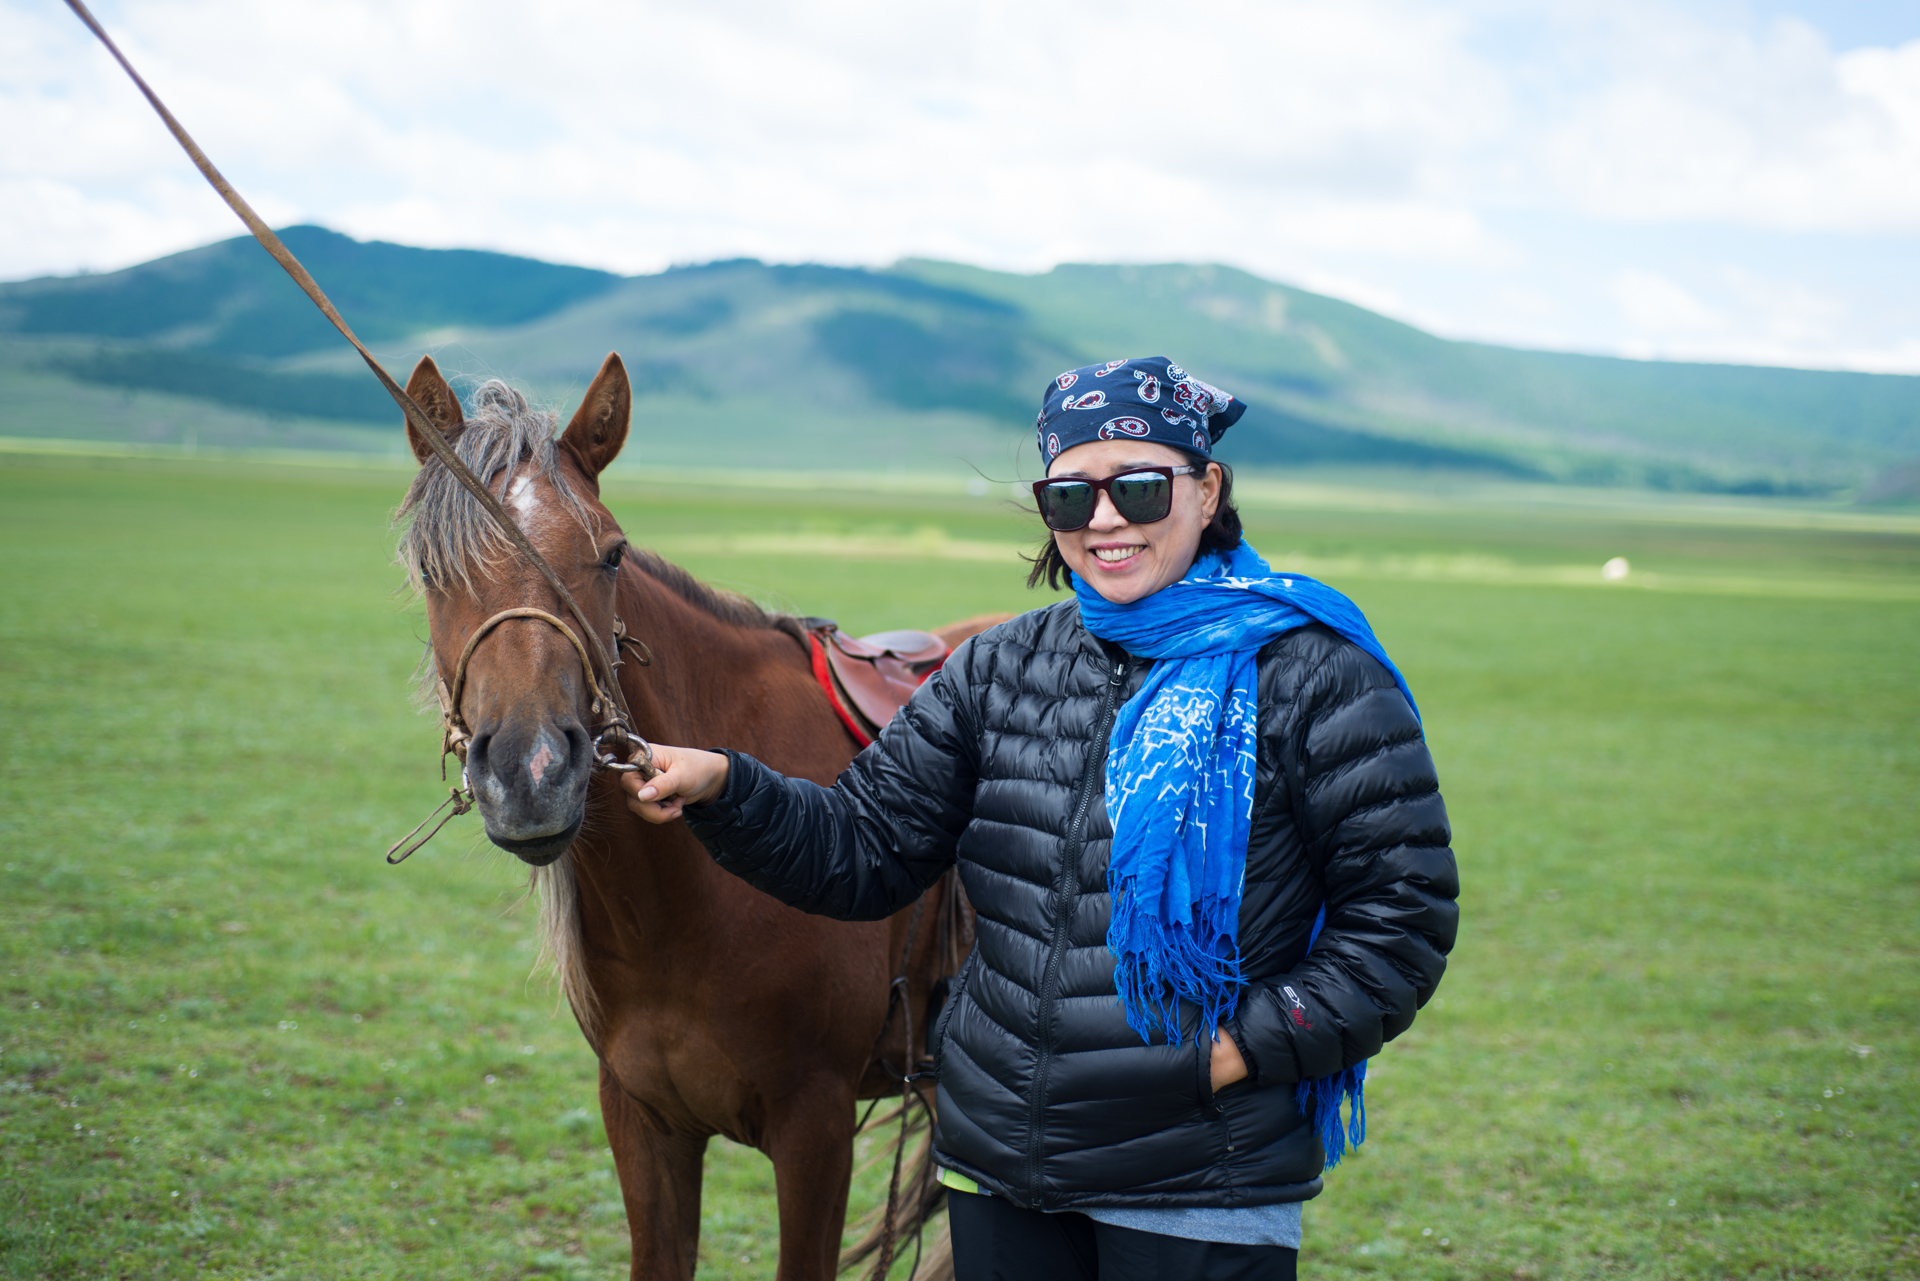 150802_474.jpg : 몽골 학습탐사 2진 사진 8월2일_1 ...자